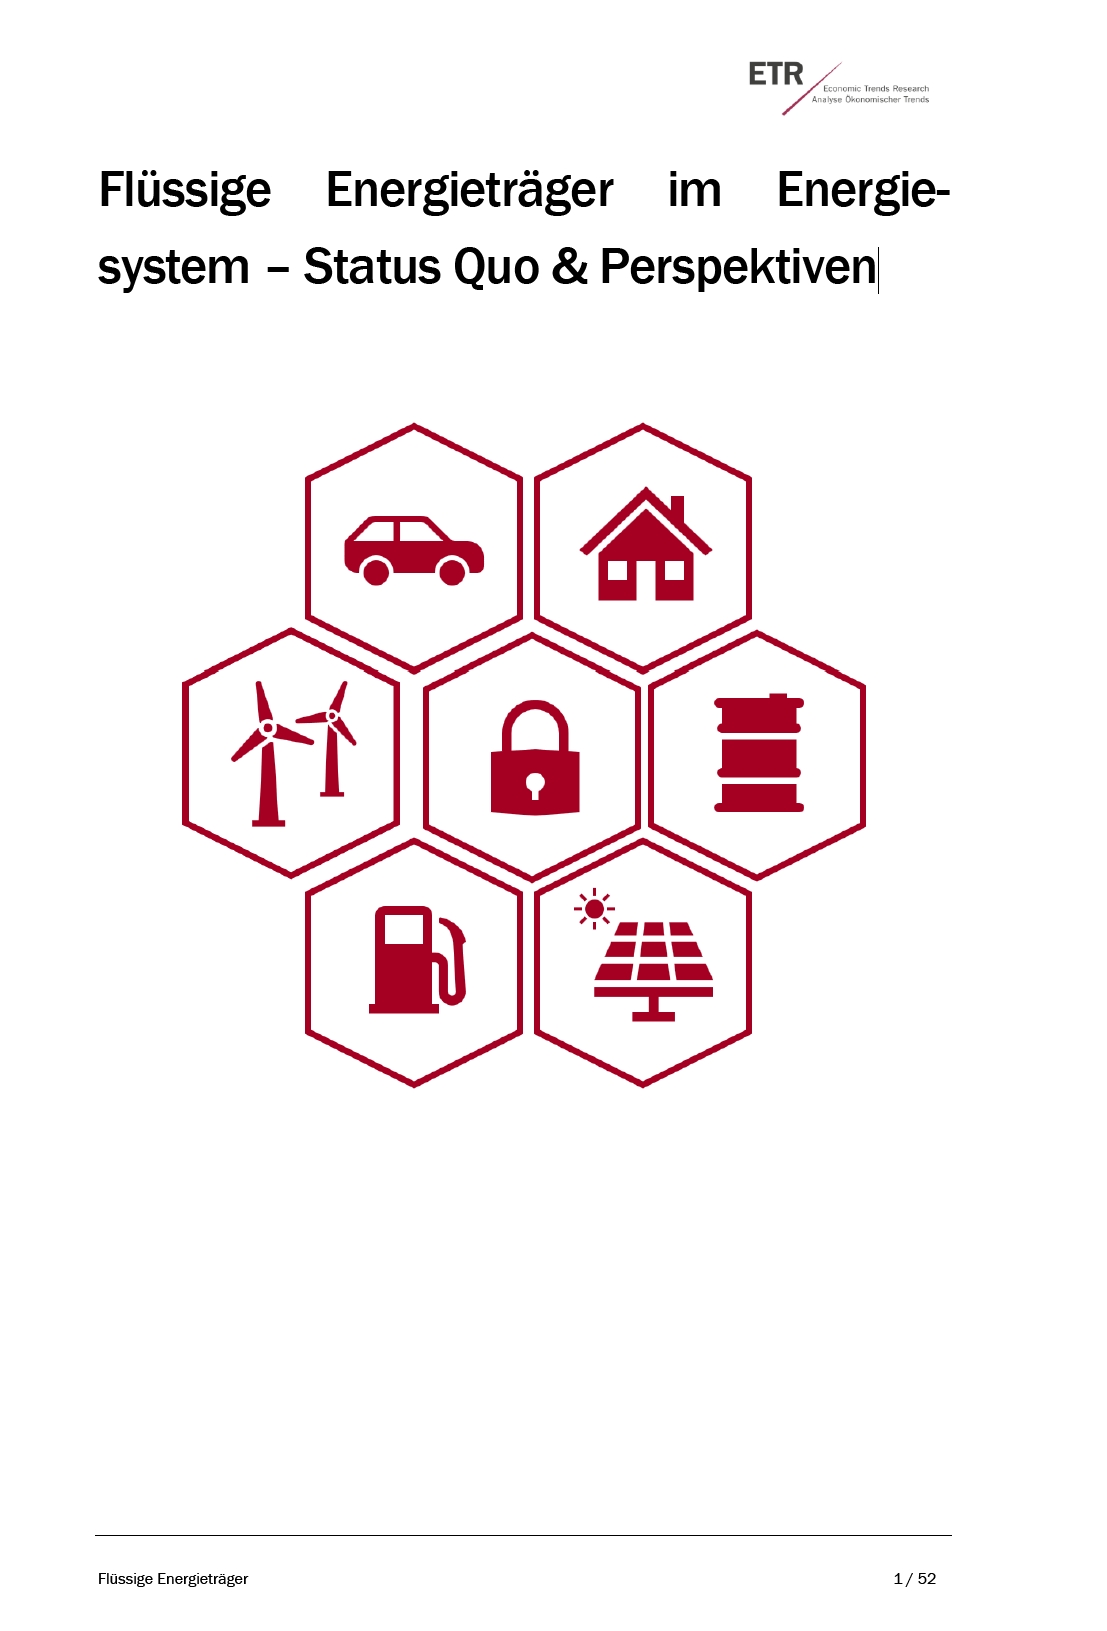 Flüssige Energieträger im Energie system: Status Quo & Perspektiven